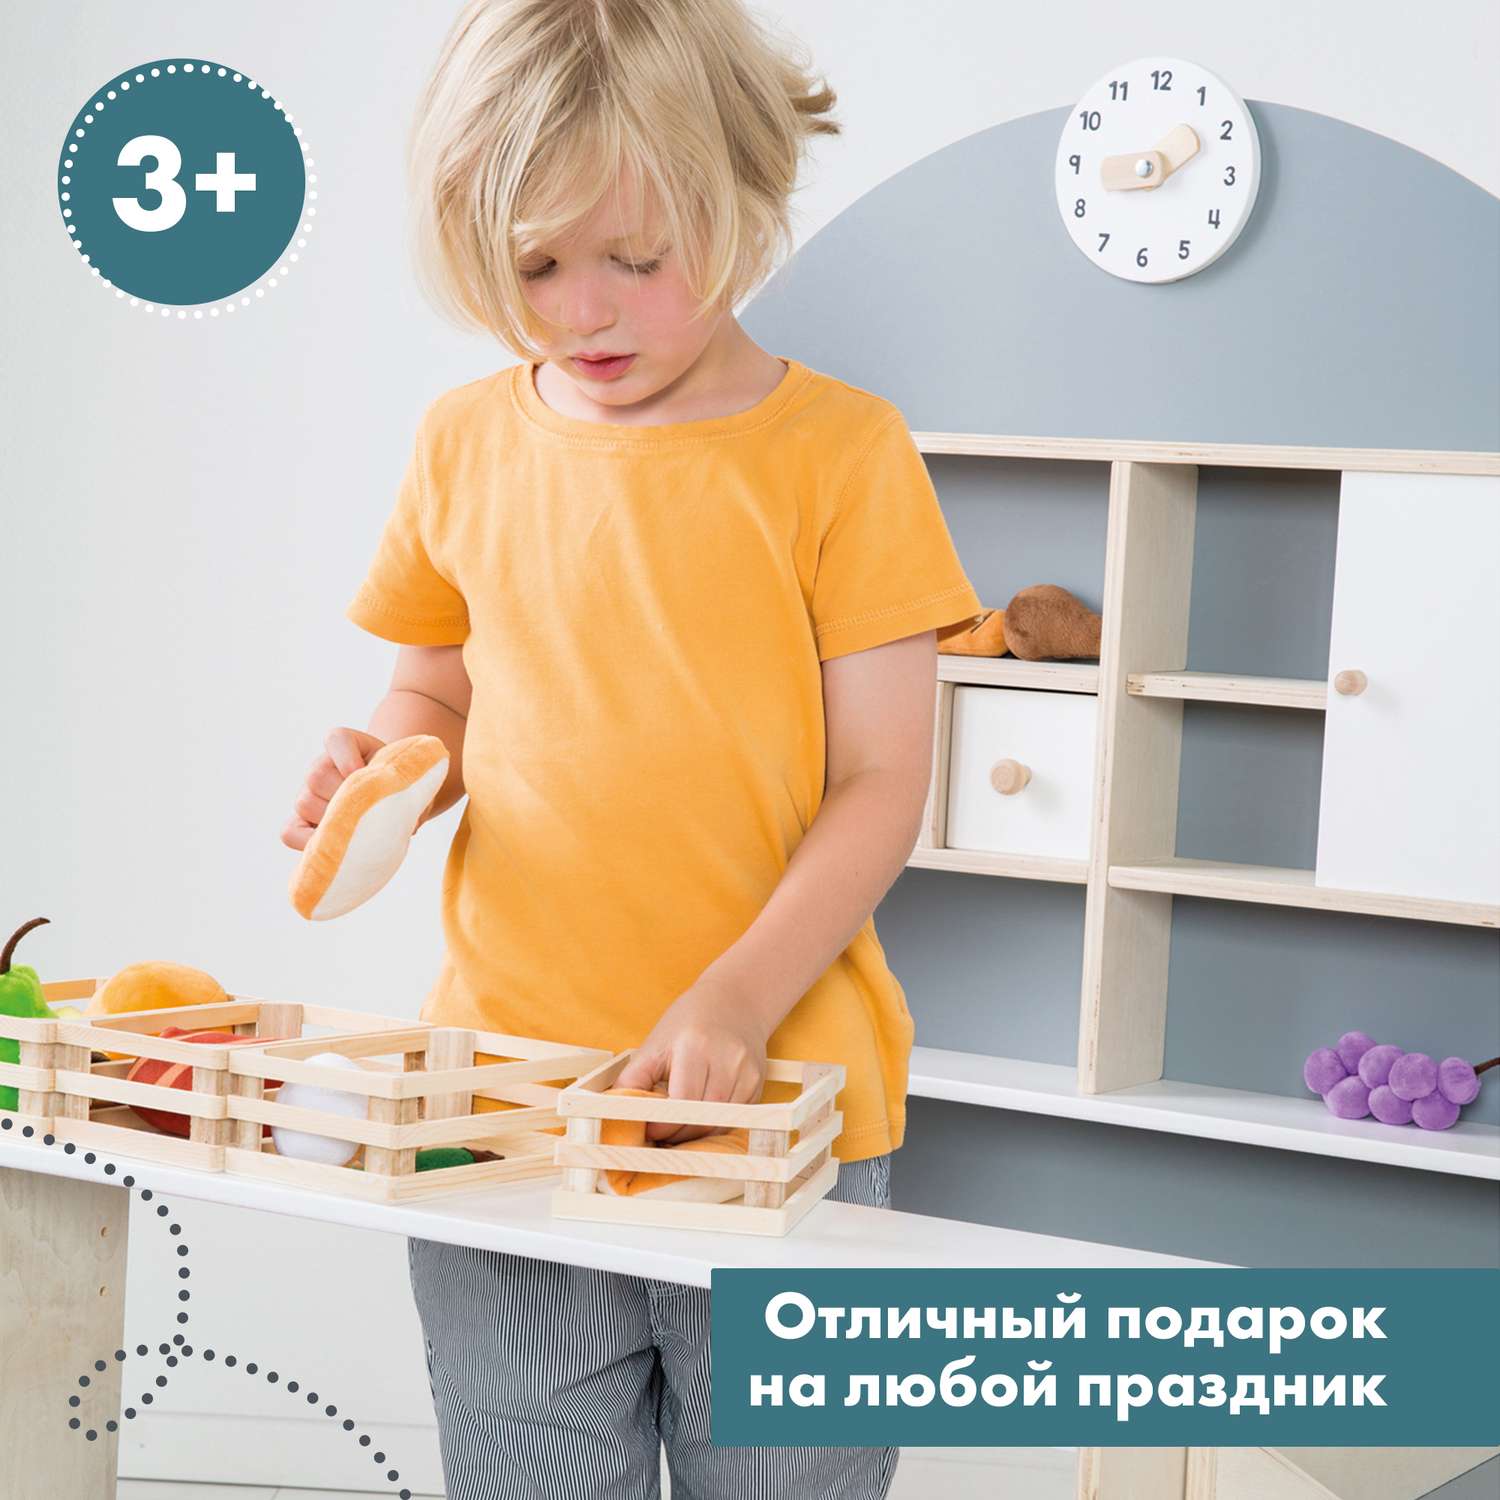 Набор плюшевых продуктов Roba игровой для детского магазина или кухни 98145 - фото 10